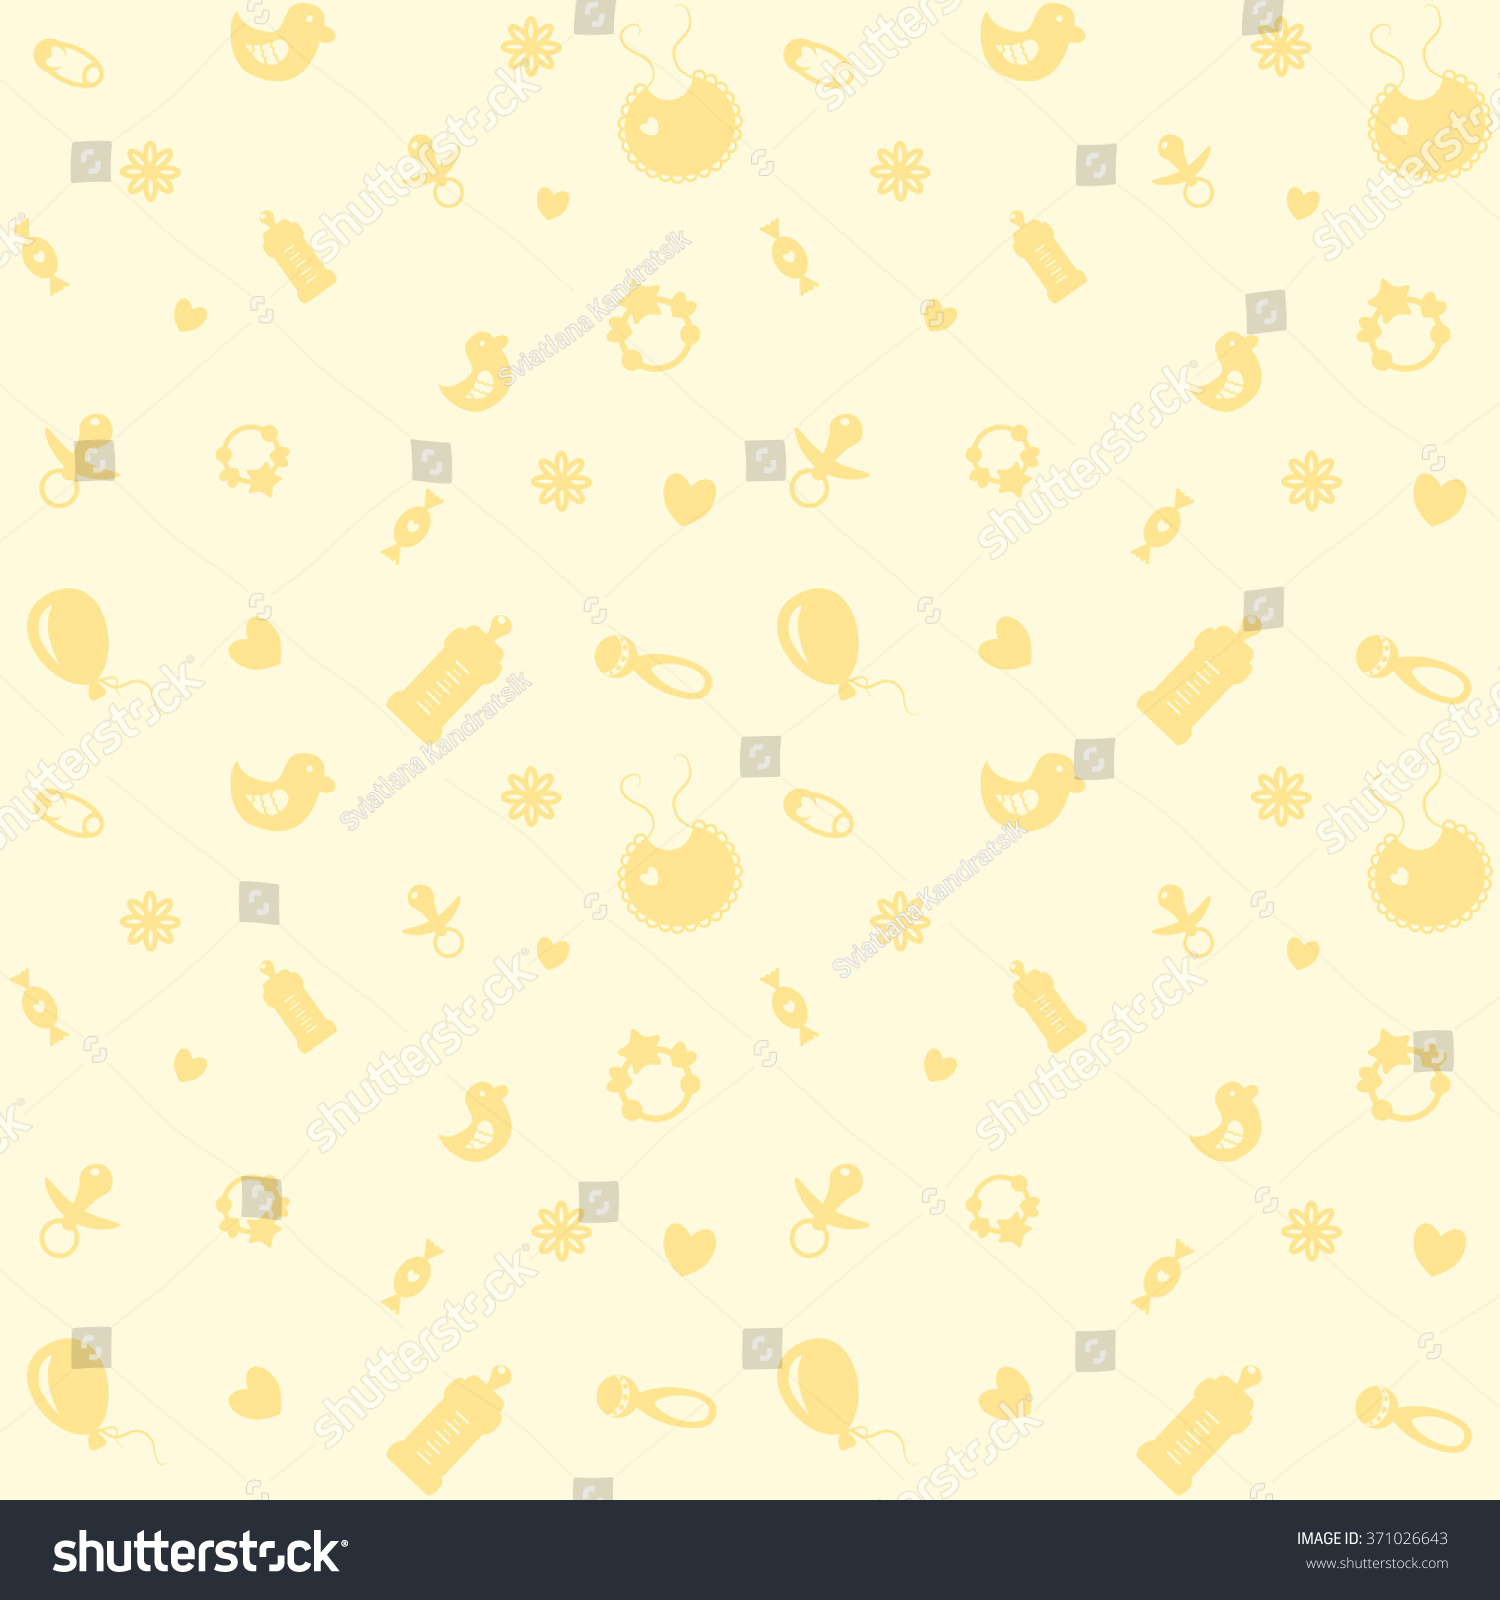 Baby yellow